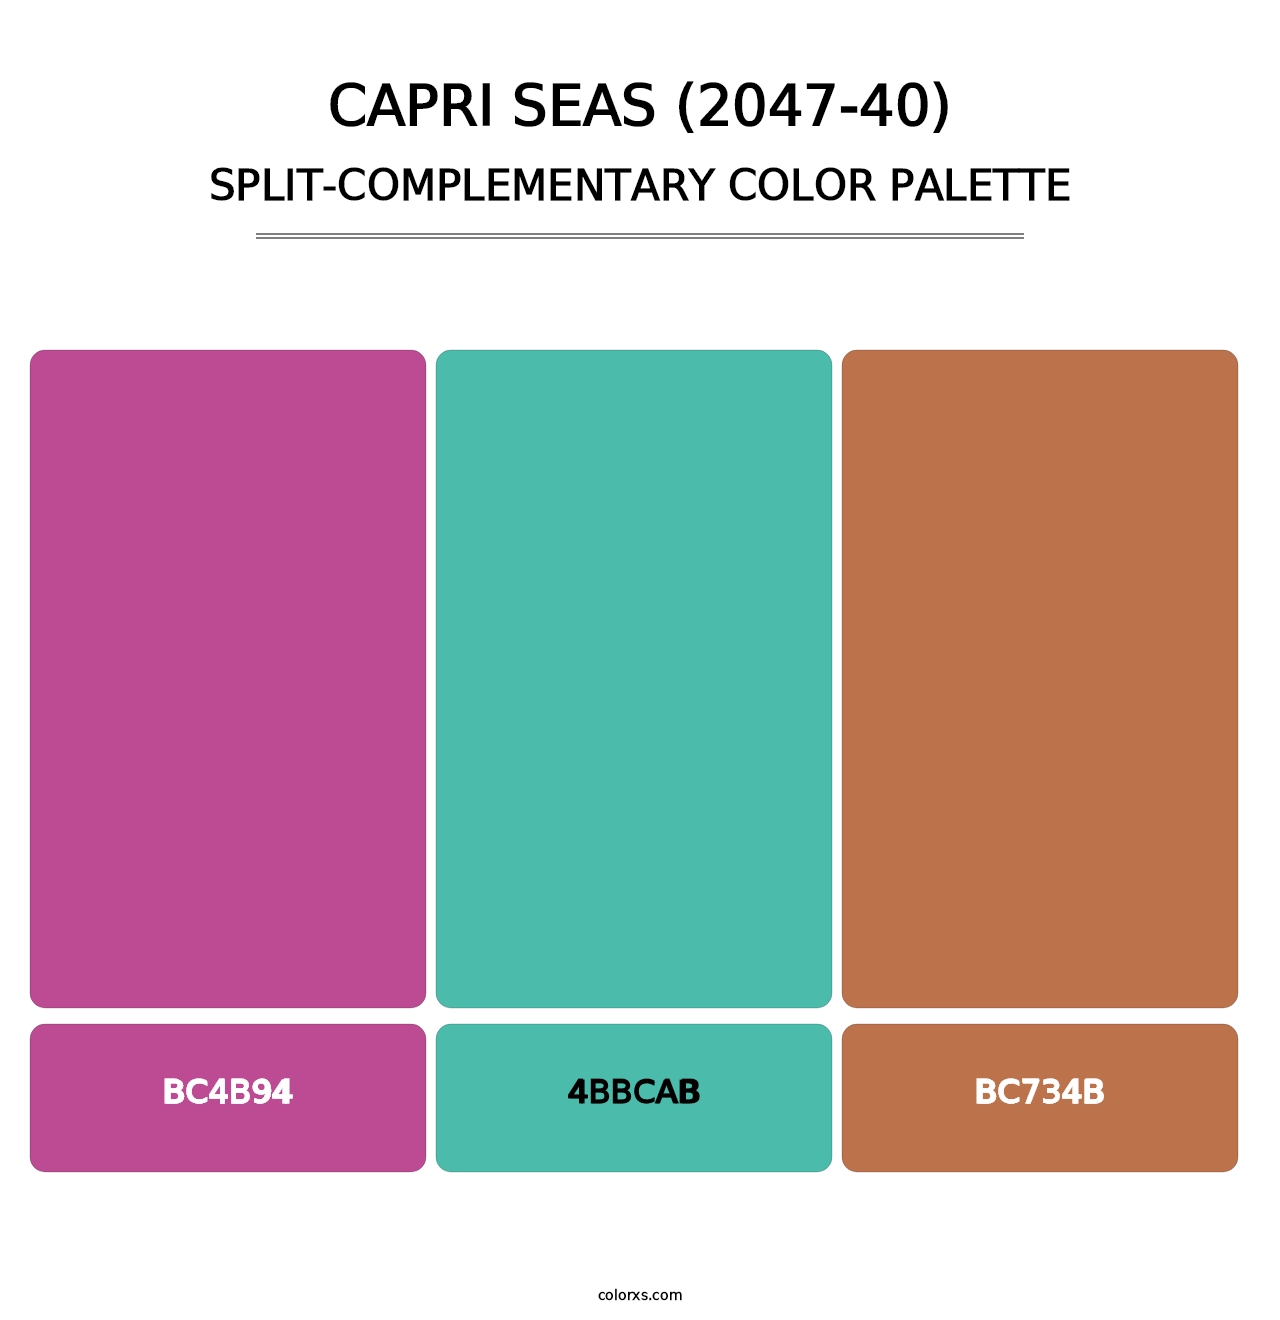 Capri Seas (2047-40) - Split-Complementary Color Palette